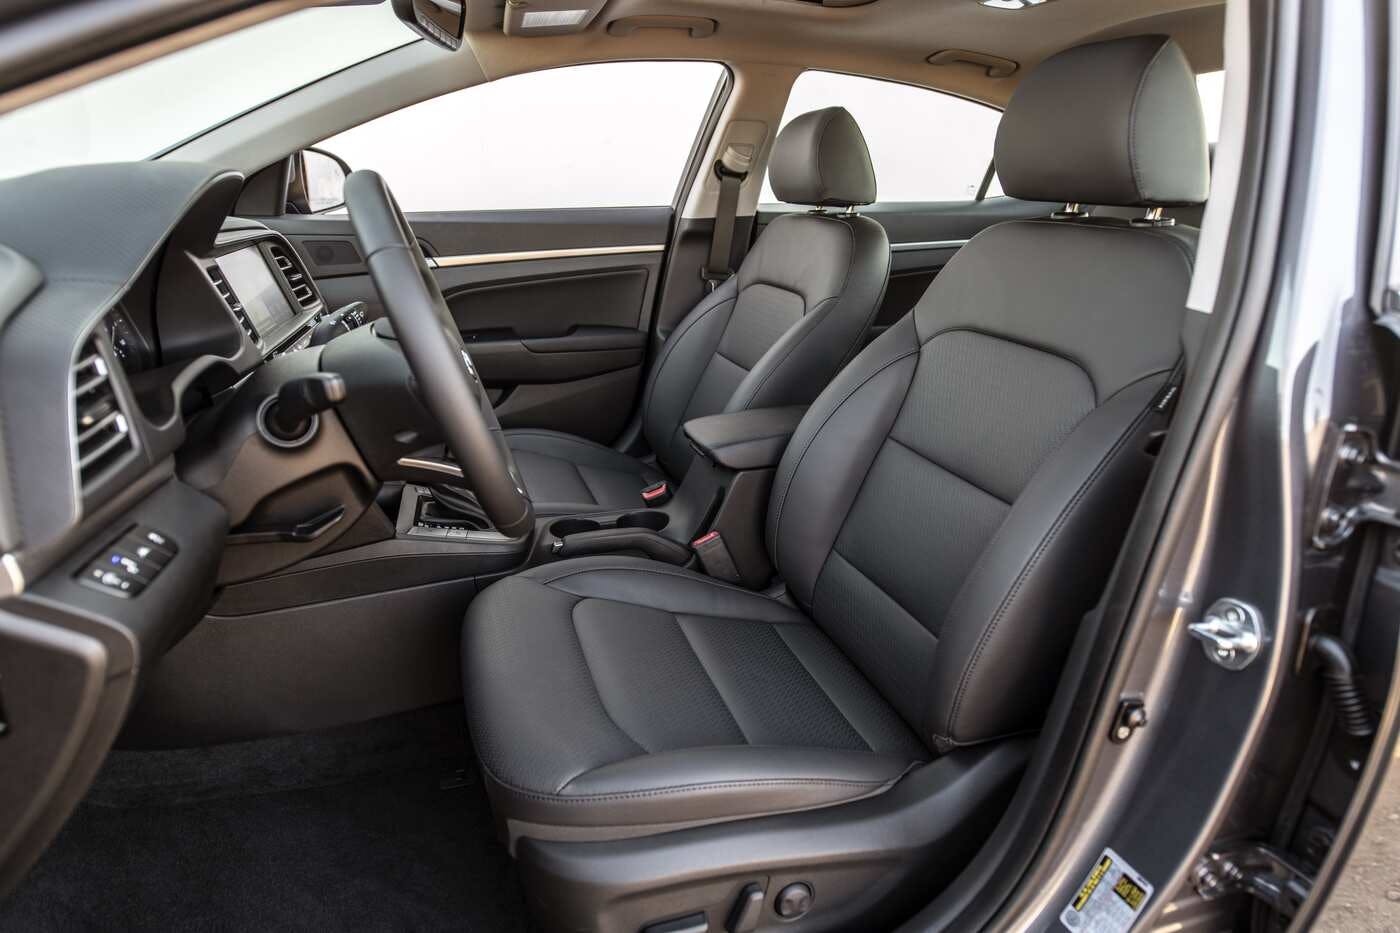 2020 Hyundai Elantra Comparisons Reviews Pictures Truecar